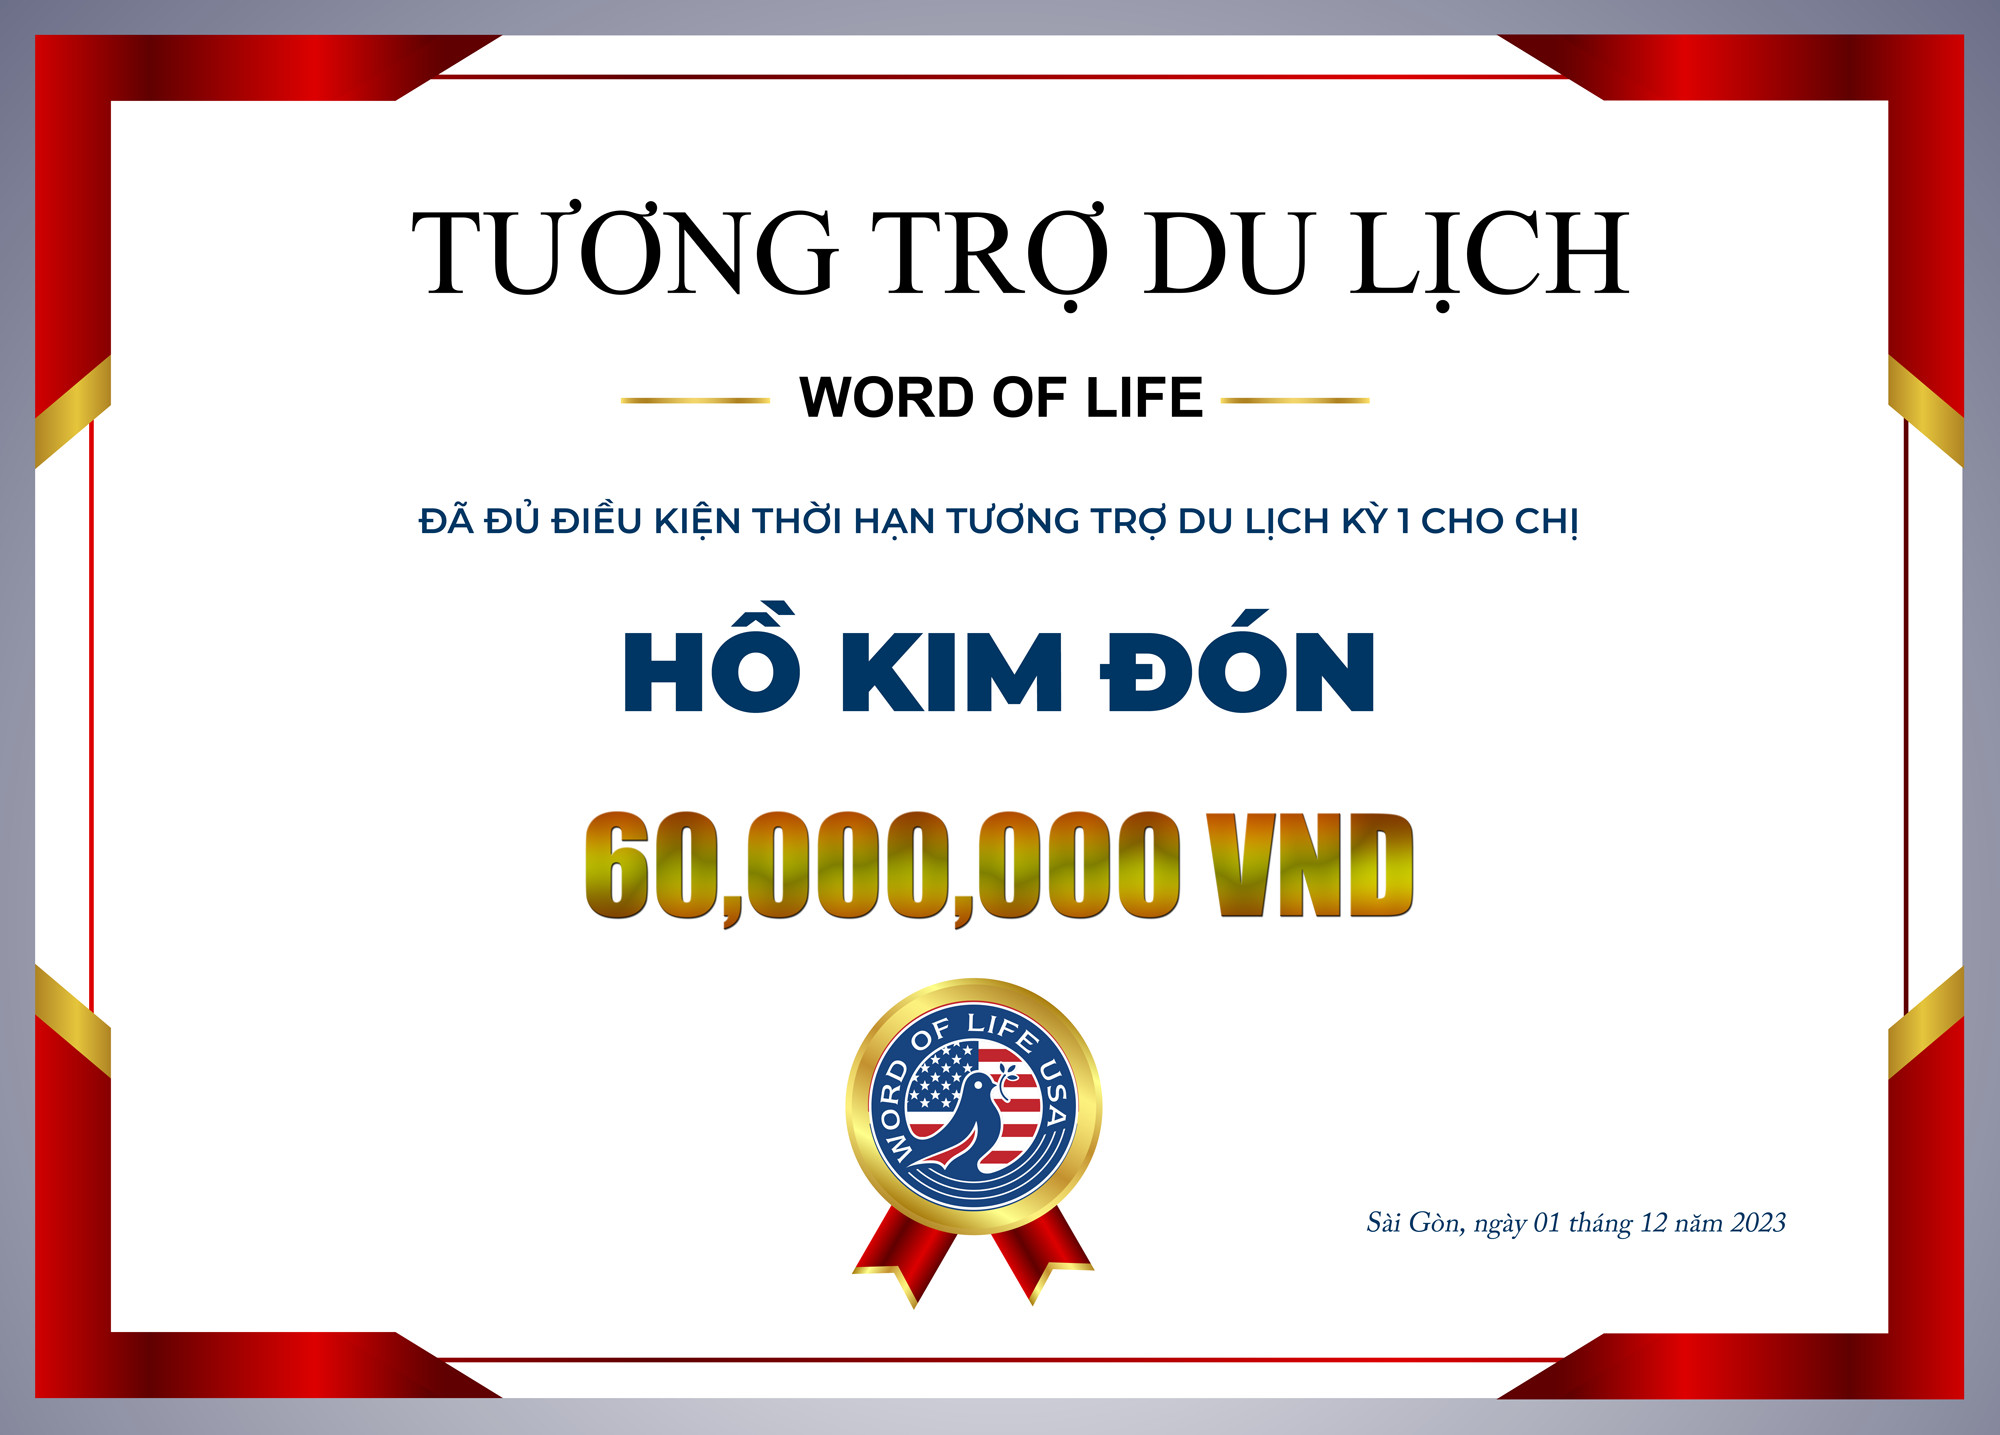 Thành viên Hồ Kim Đón nhận tương trợ phí du lịch kì 1.